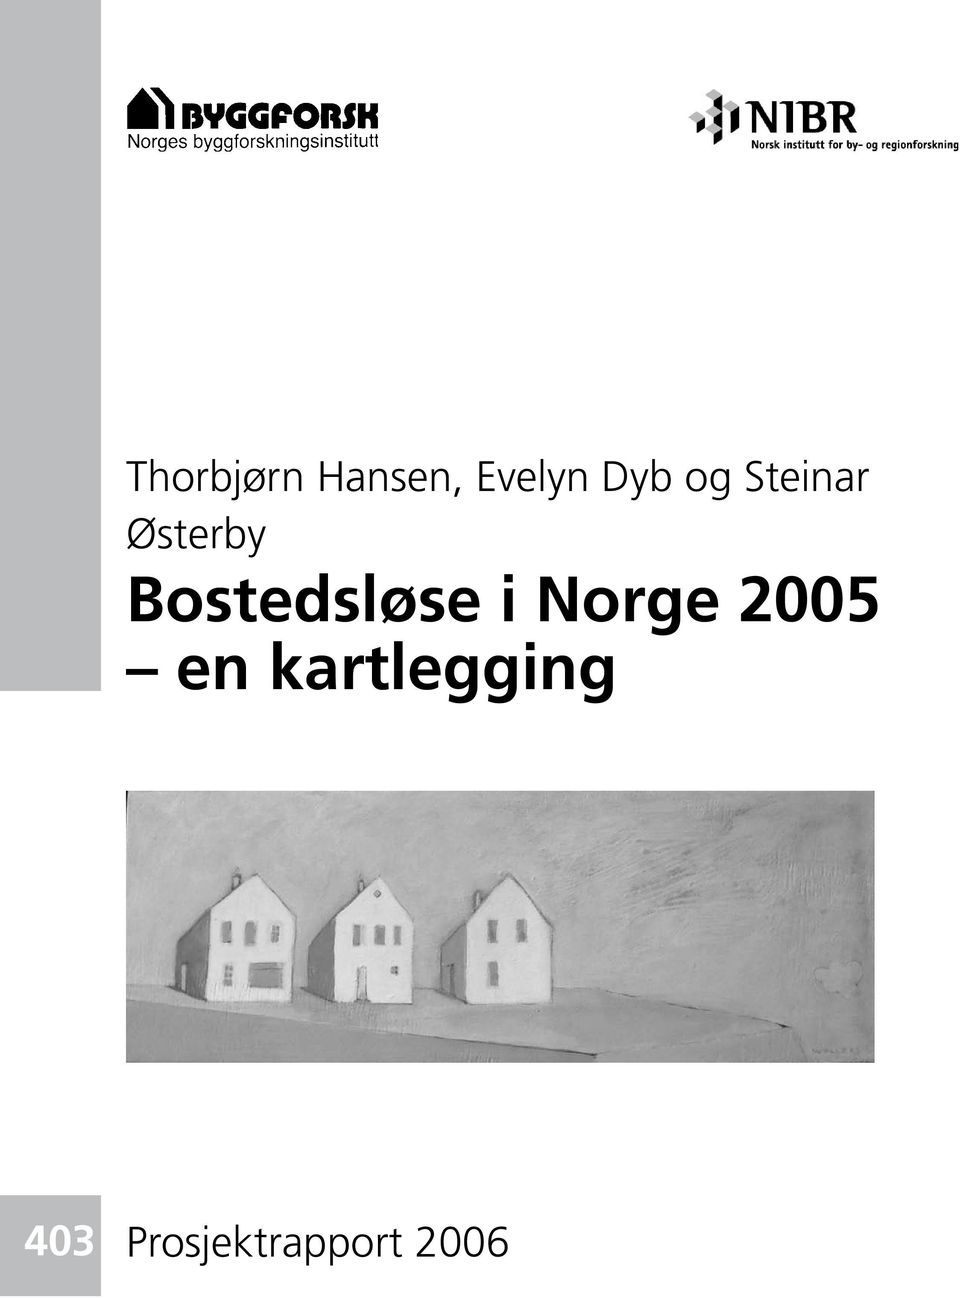 Bostedsløse i Norge 2005 en